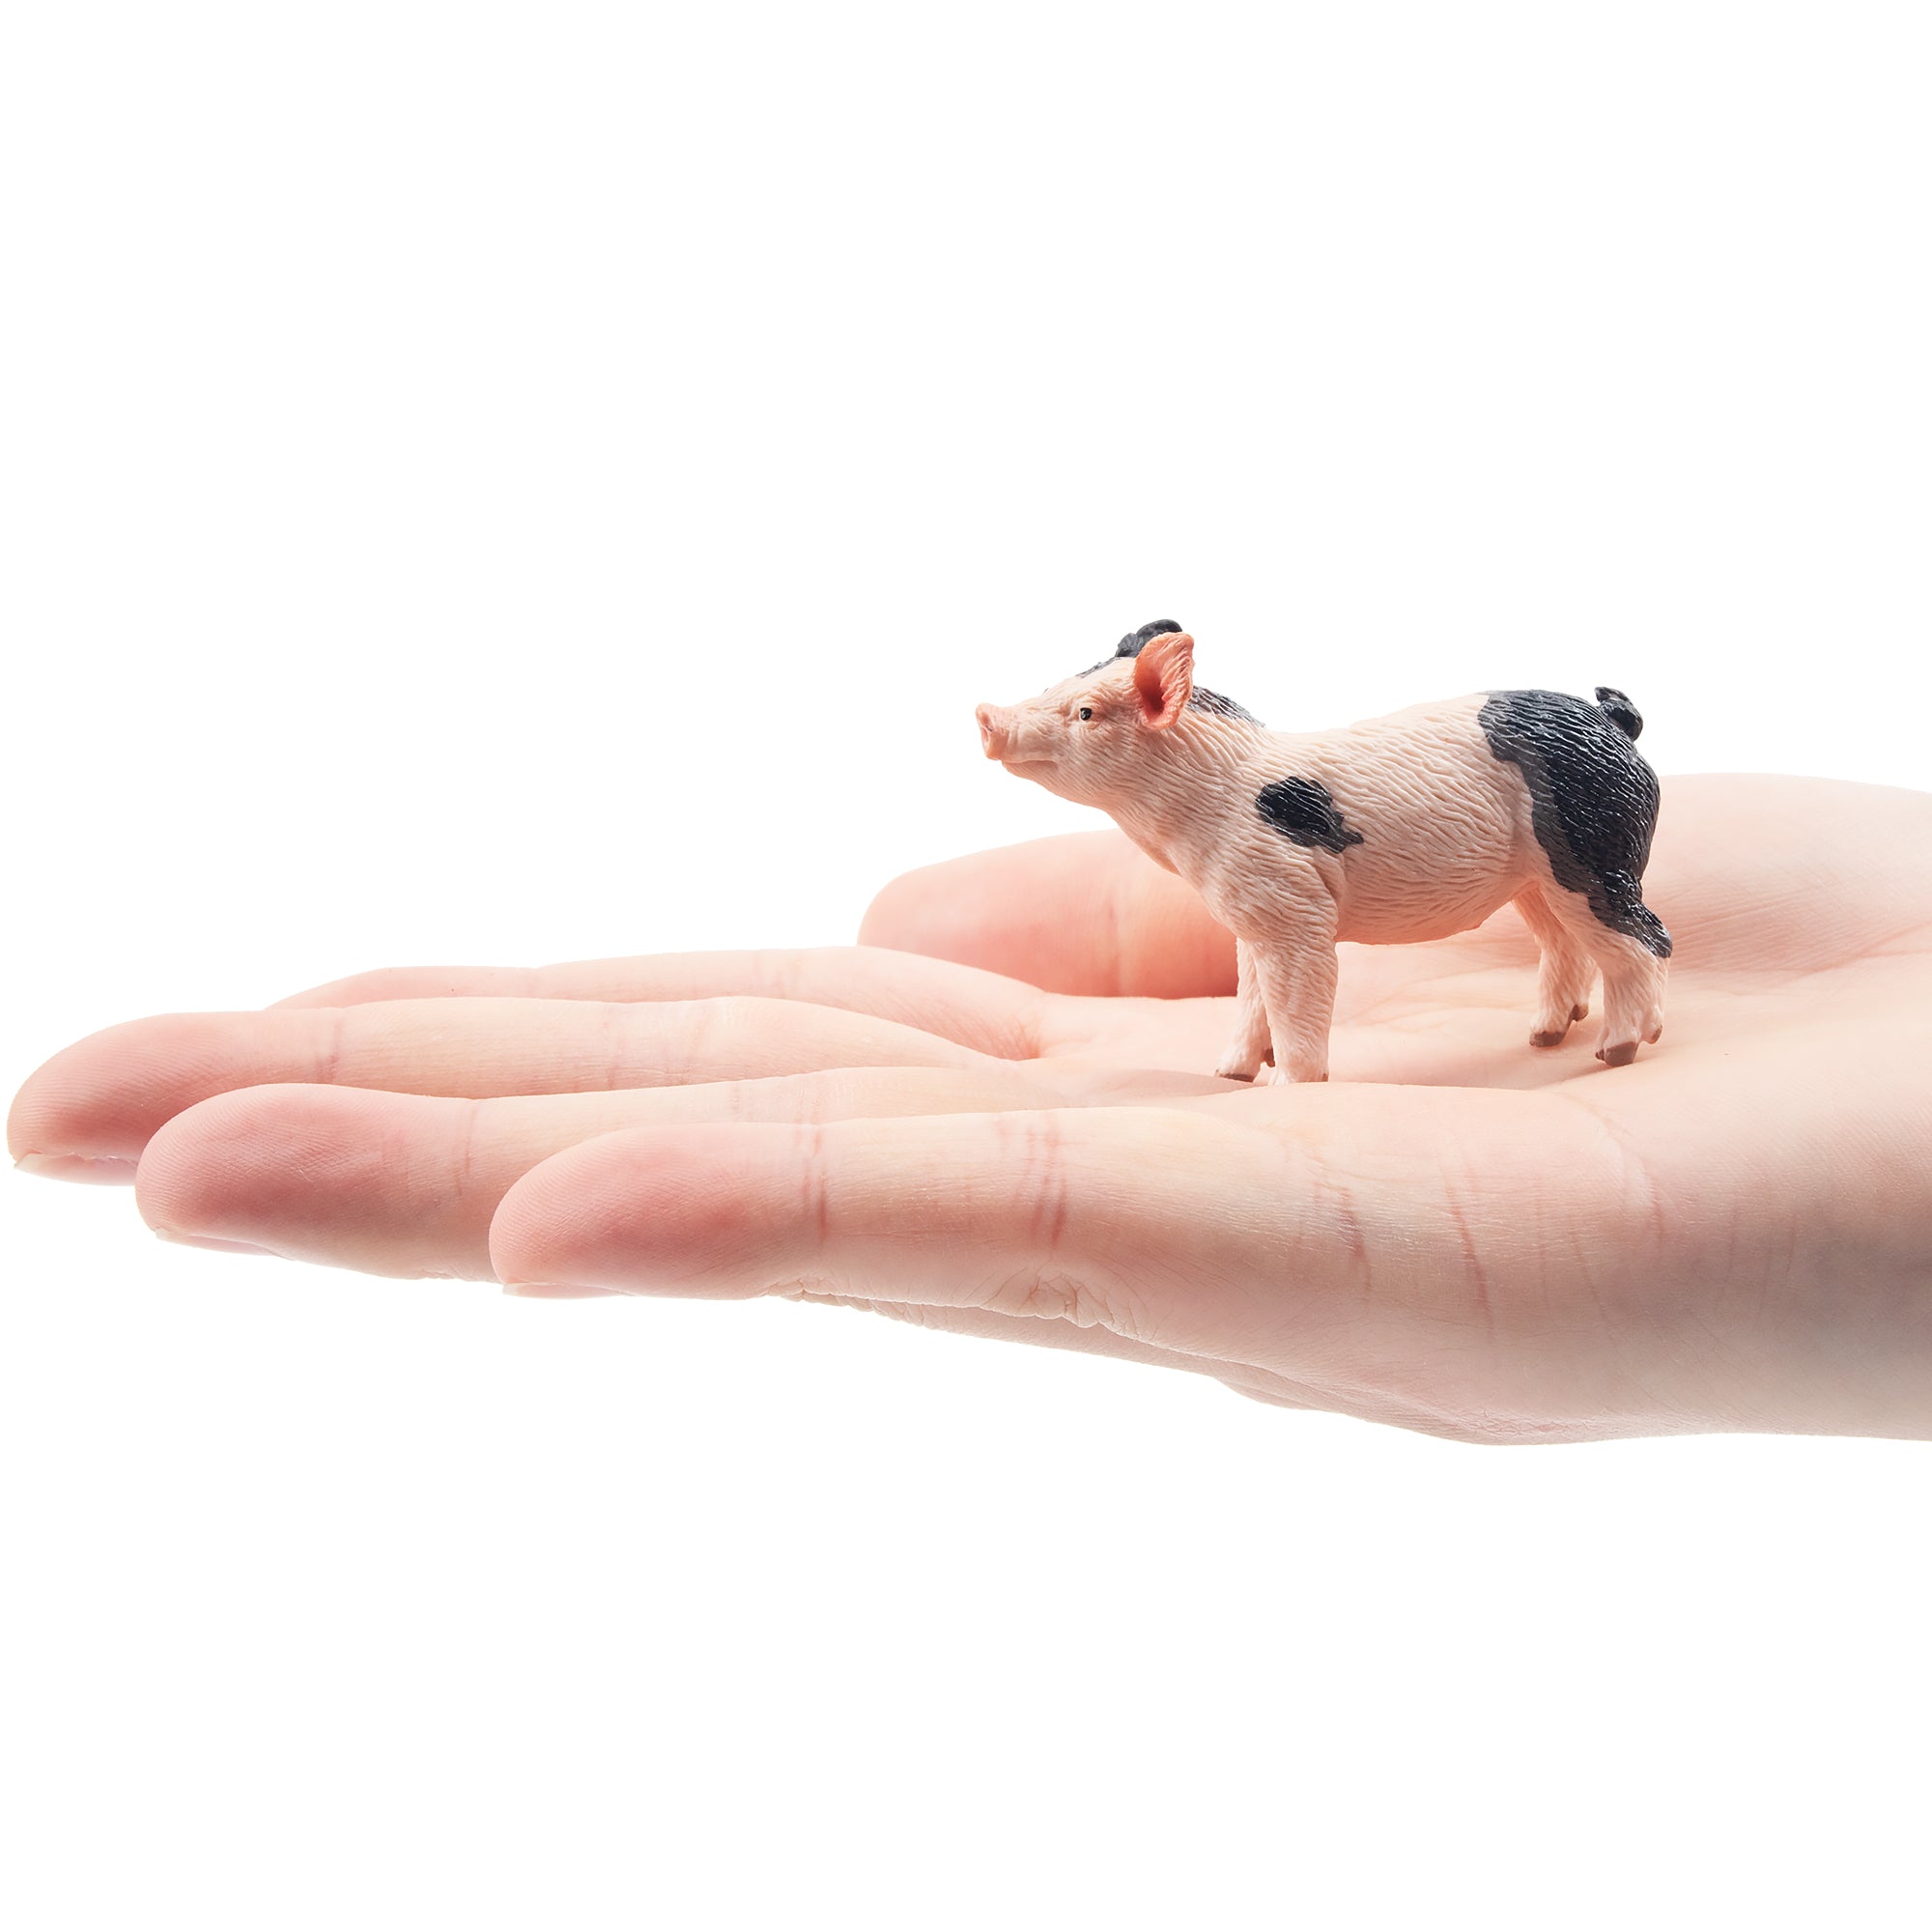 Toymany Gazing Grey Piglet Figurine Toy-on hand